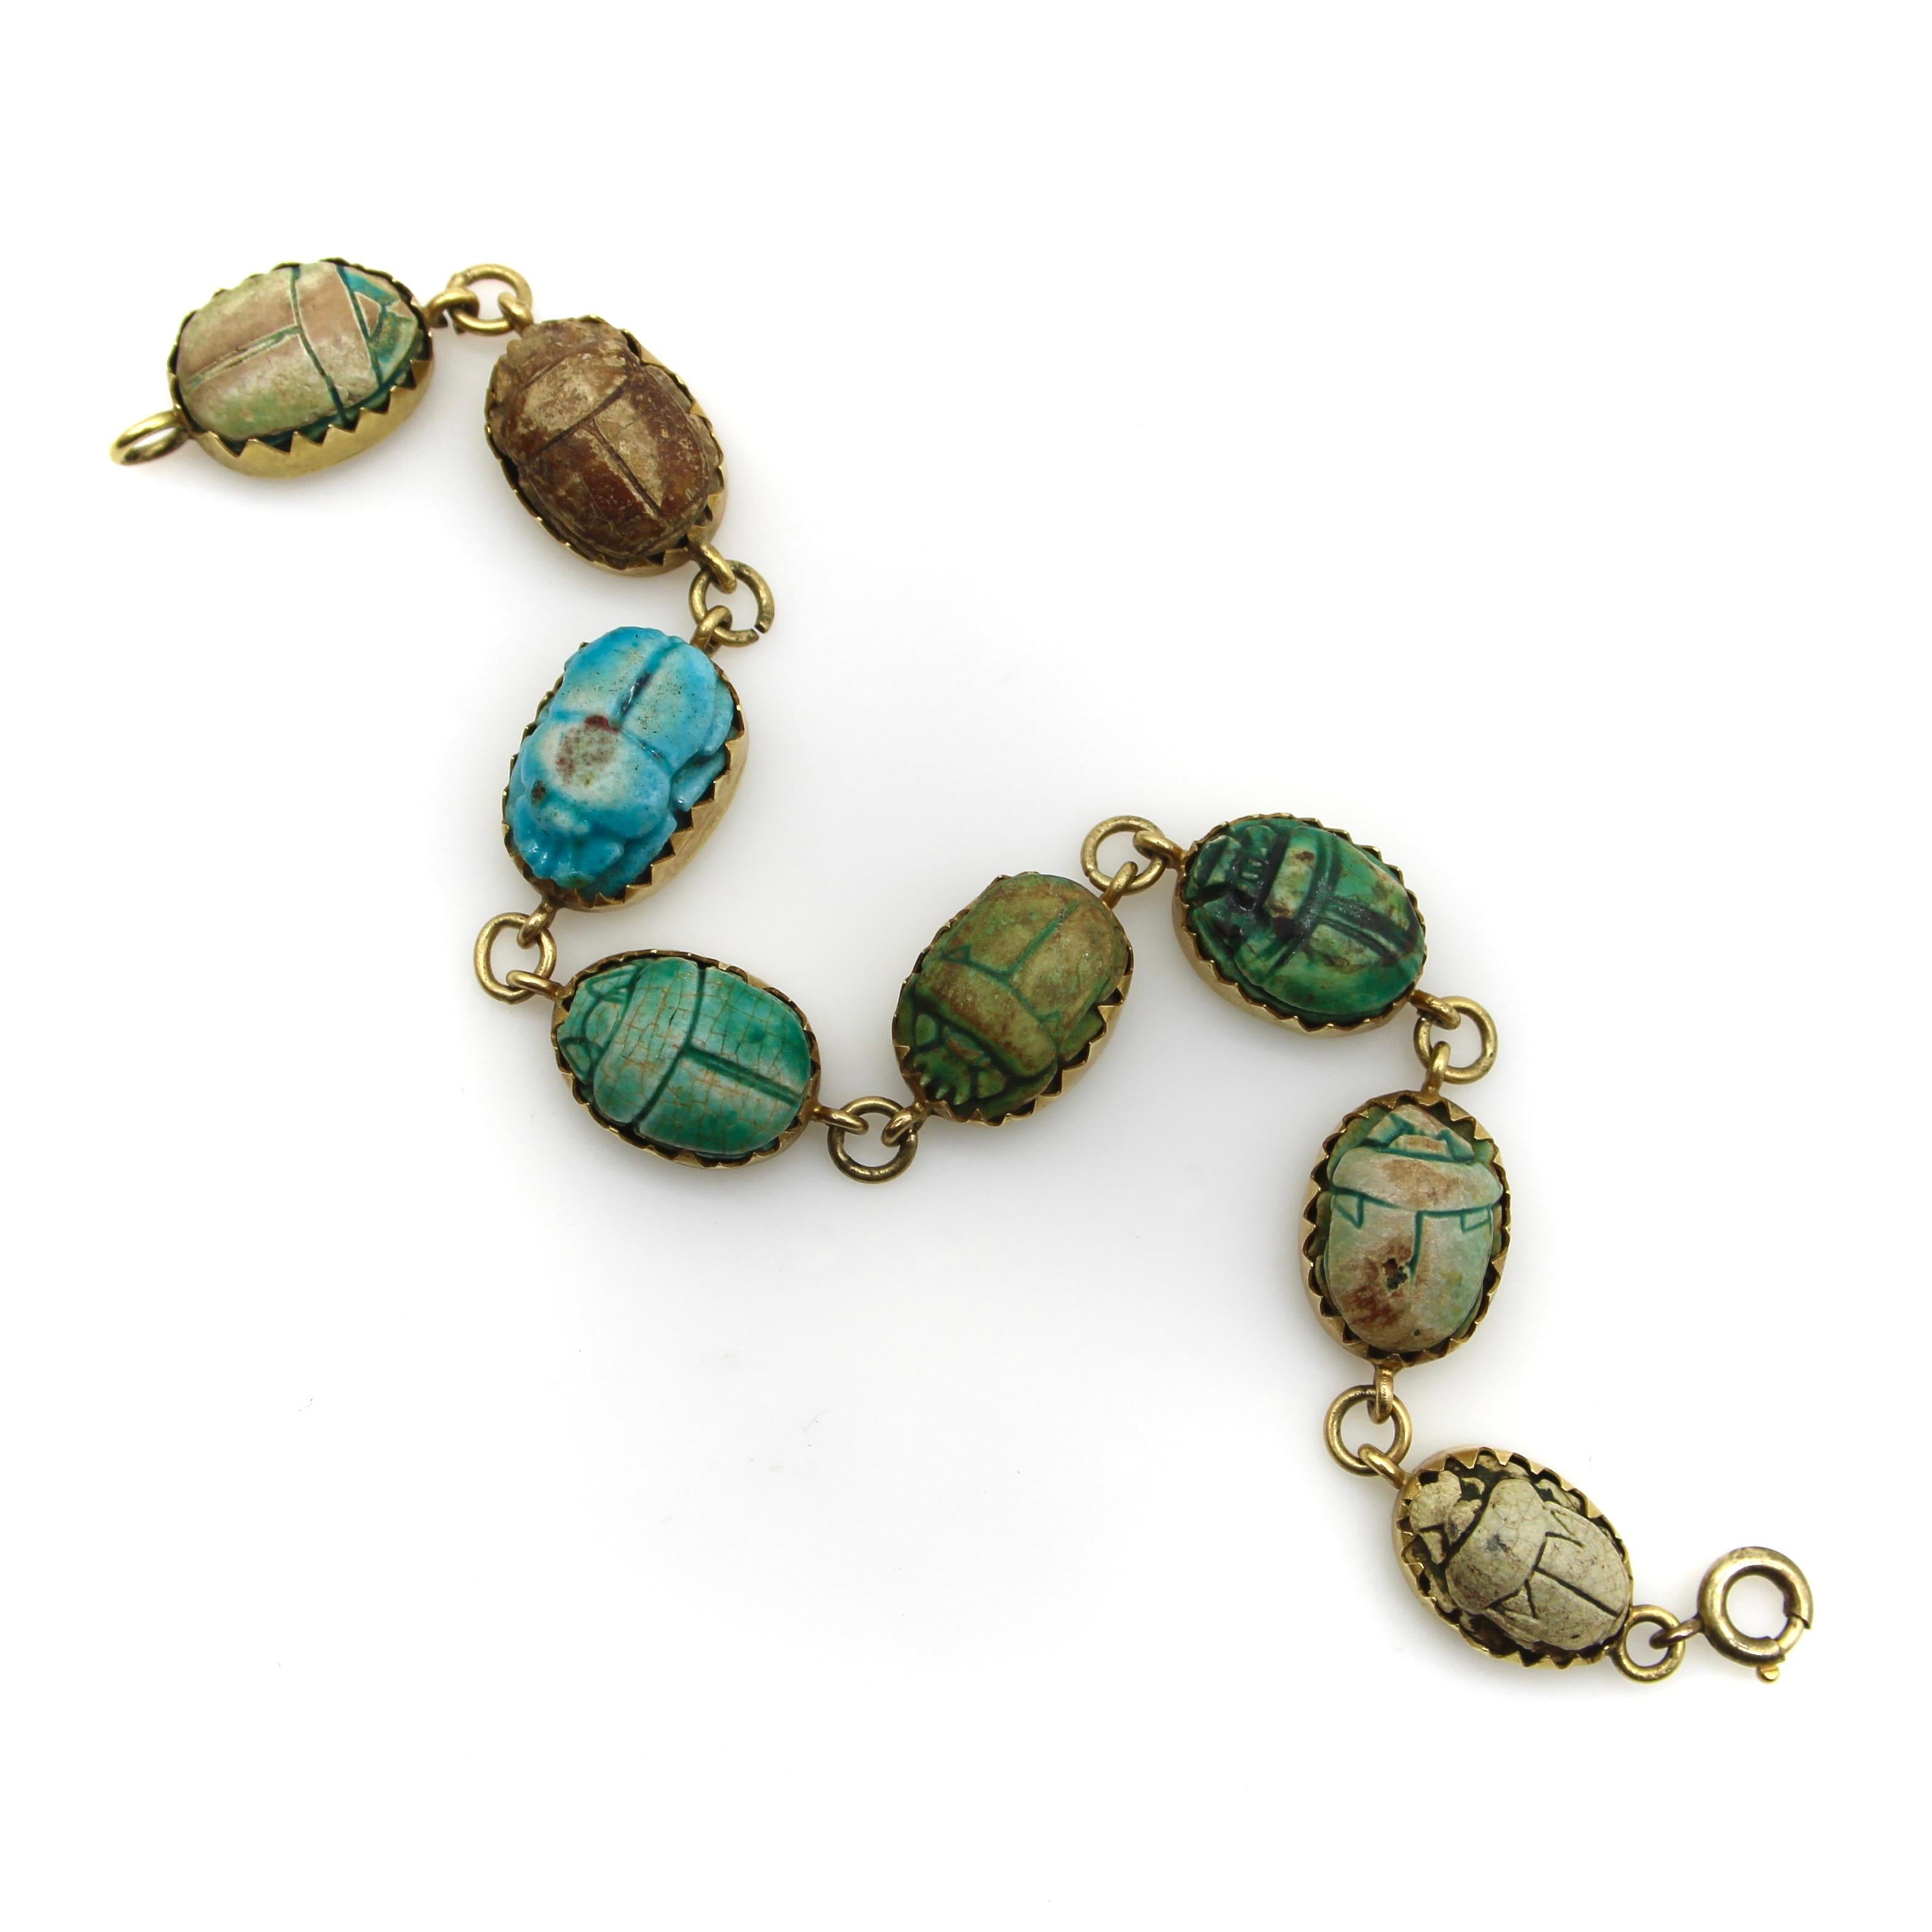 Dieses Armband aus 18 Karat Gold enthält acht Skarabäen in verschiedenen Blau-, Grün- und Brauntönen, jeder mit einer einzigartigen Hieroglyphe. Die aus Ton gefertigten Skarabäen erhalten ihre Farbe, wenn sich das Kupfer im Ton während des